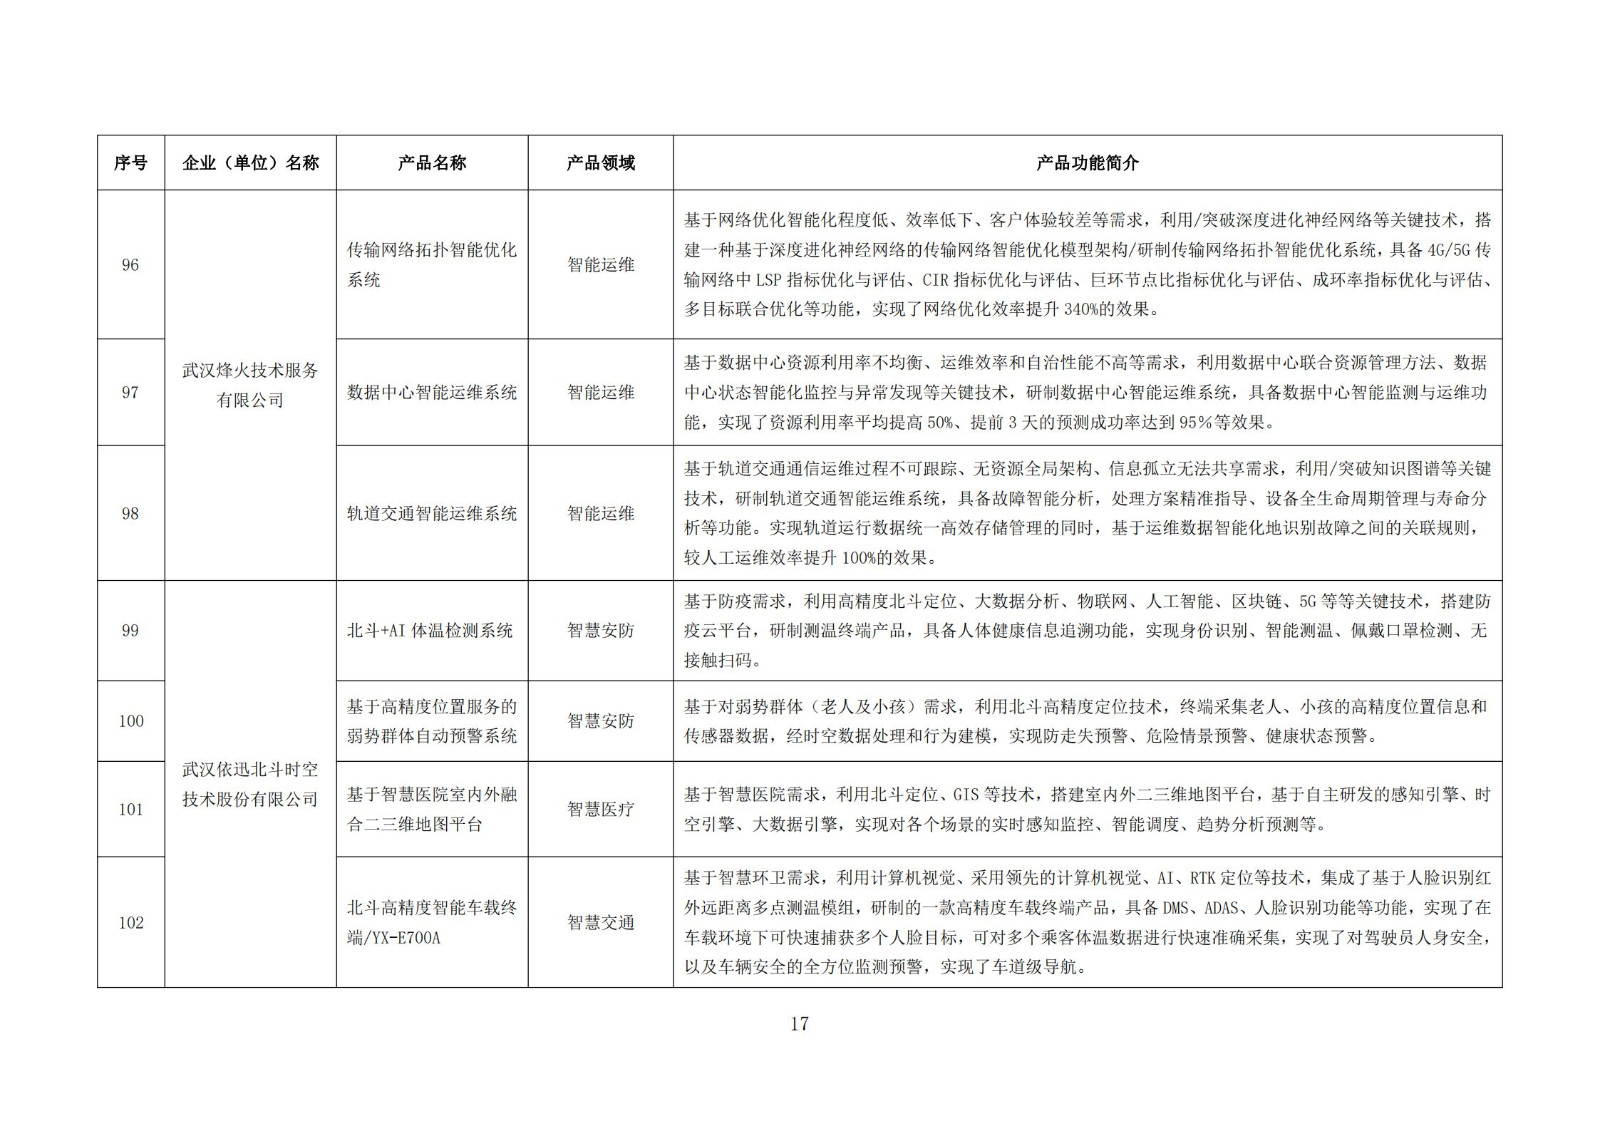 武汉新一代人工智能产品目录（首批）_16.jpg